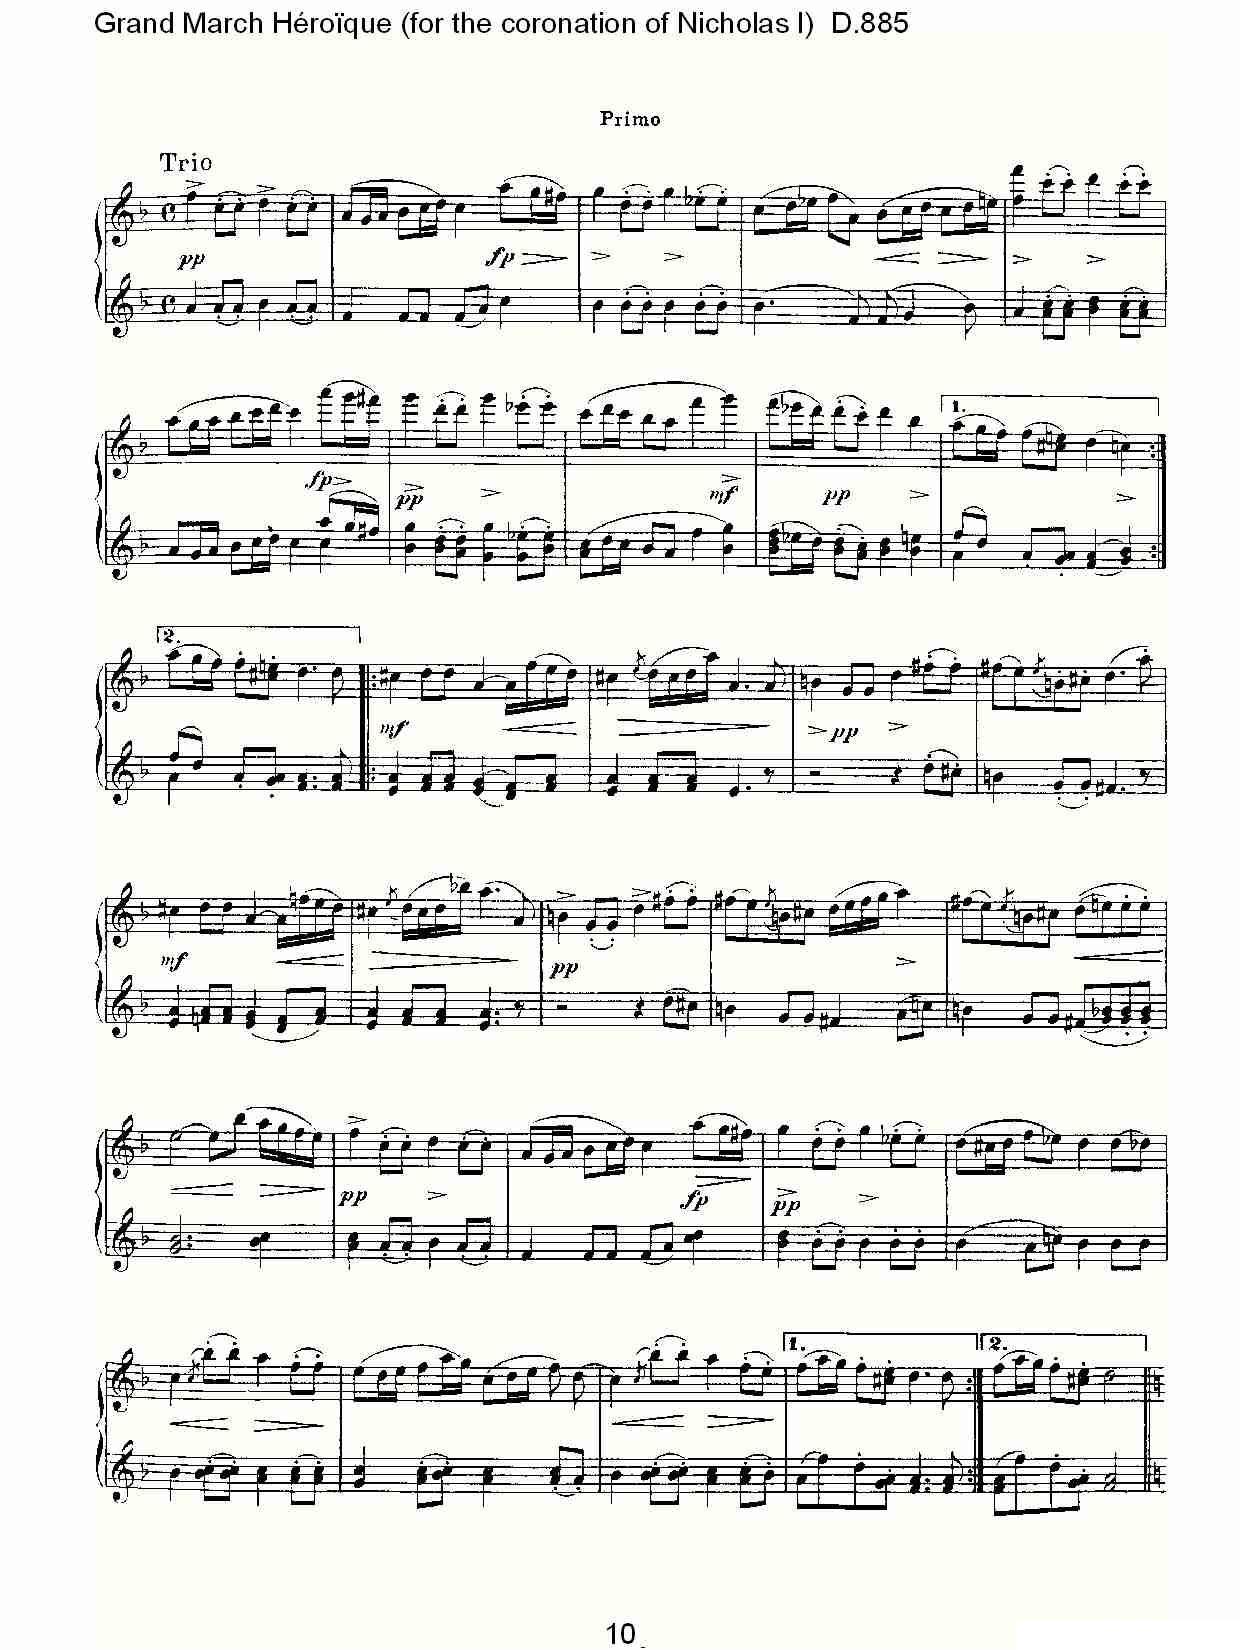 豪华进行曲（为尼古拉斯一世加冕礼而作)D.88）钢琴曲谱（图10）